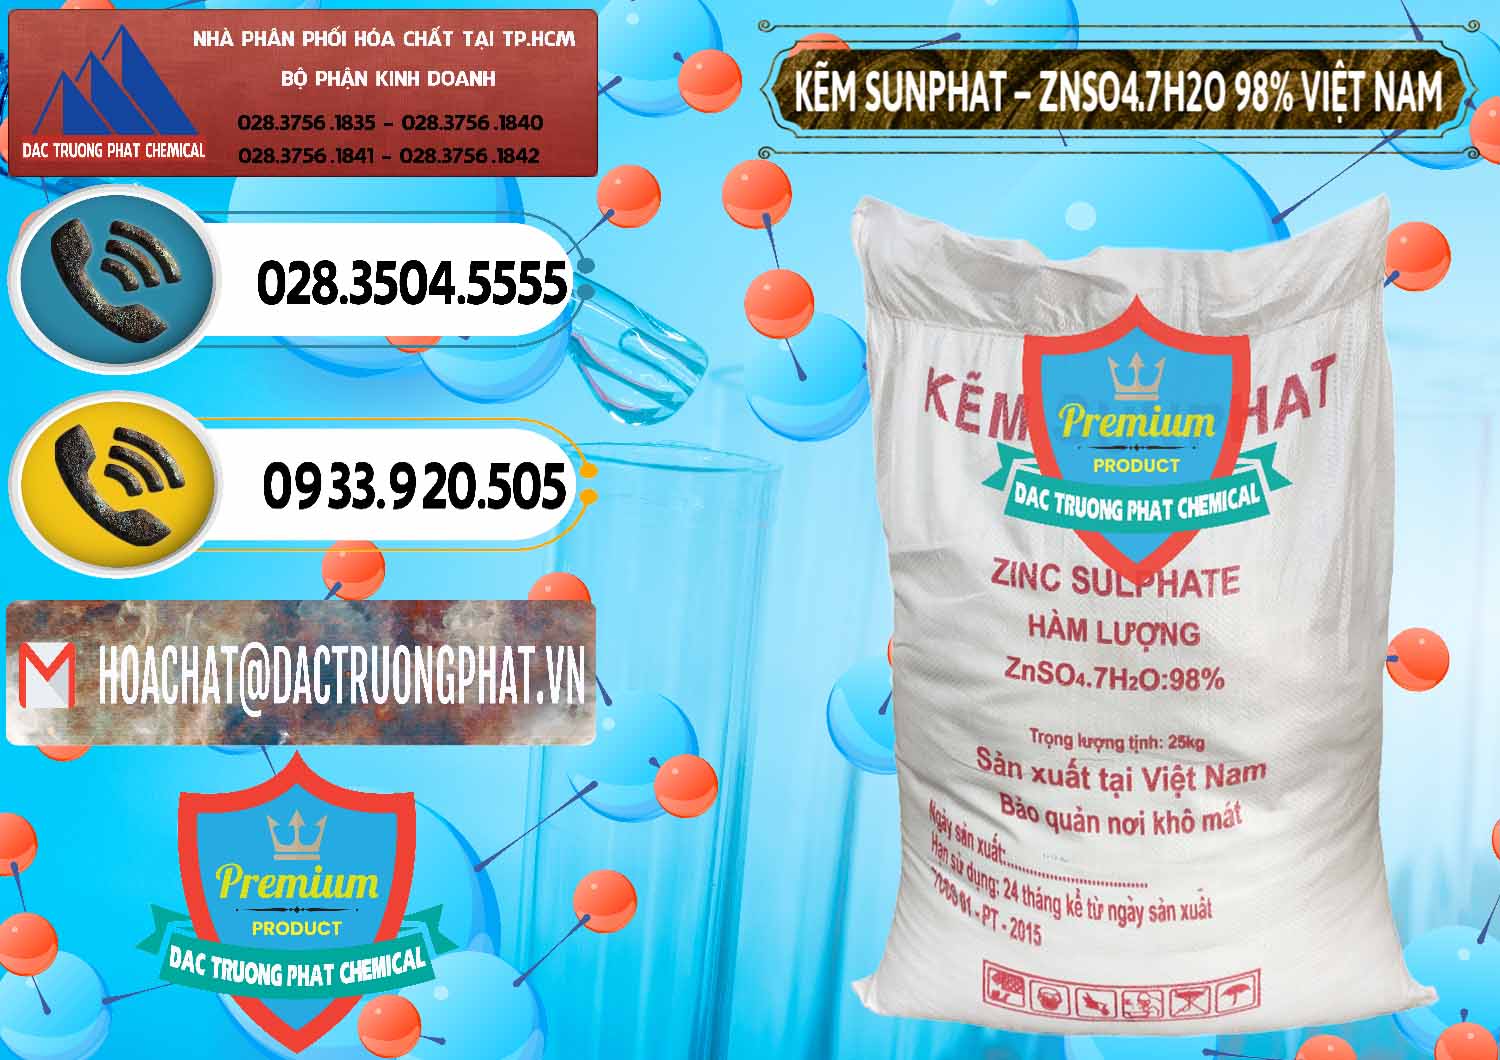 Công ty chuyên kinh doanh và cung cấp Kẽm Sunfat – ZNSO4.7H2O Việt Nam - 0189 - Cty chuyên bán & cung cấp hóa chất tại TP.HCM - hoachatdetnhuom.vn